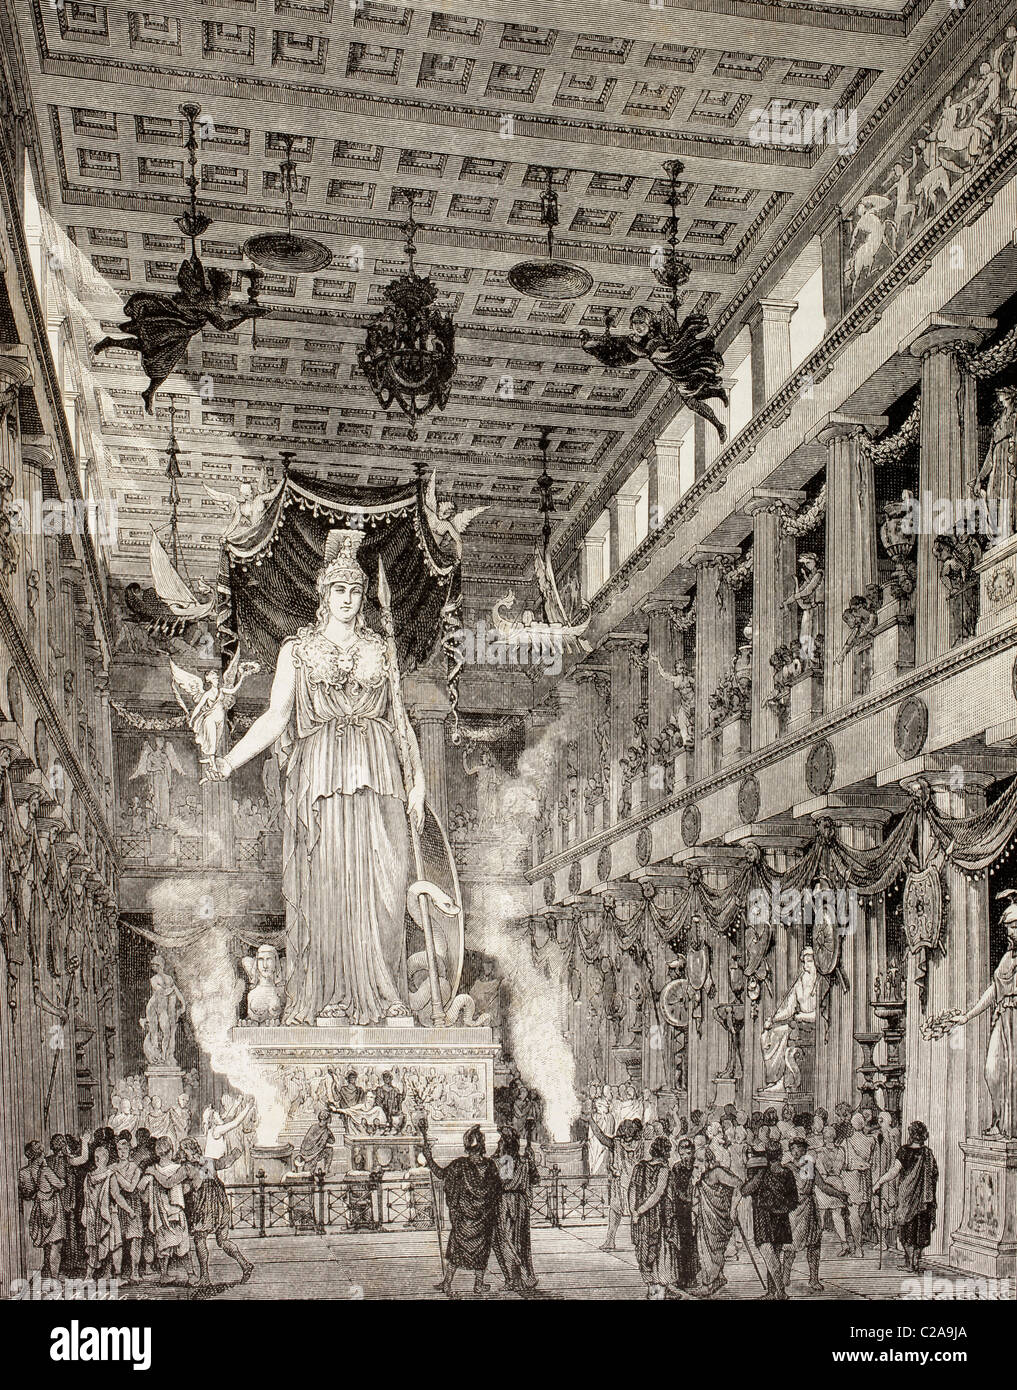 Impresión artística de el Partenón, Atenas, Grecia, durante el período clásico. La estatua de la diosa Atenea, centro. Foto de stock